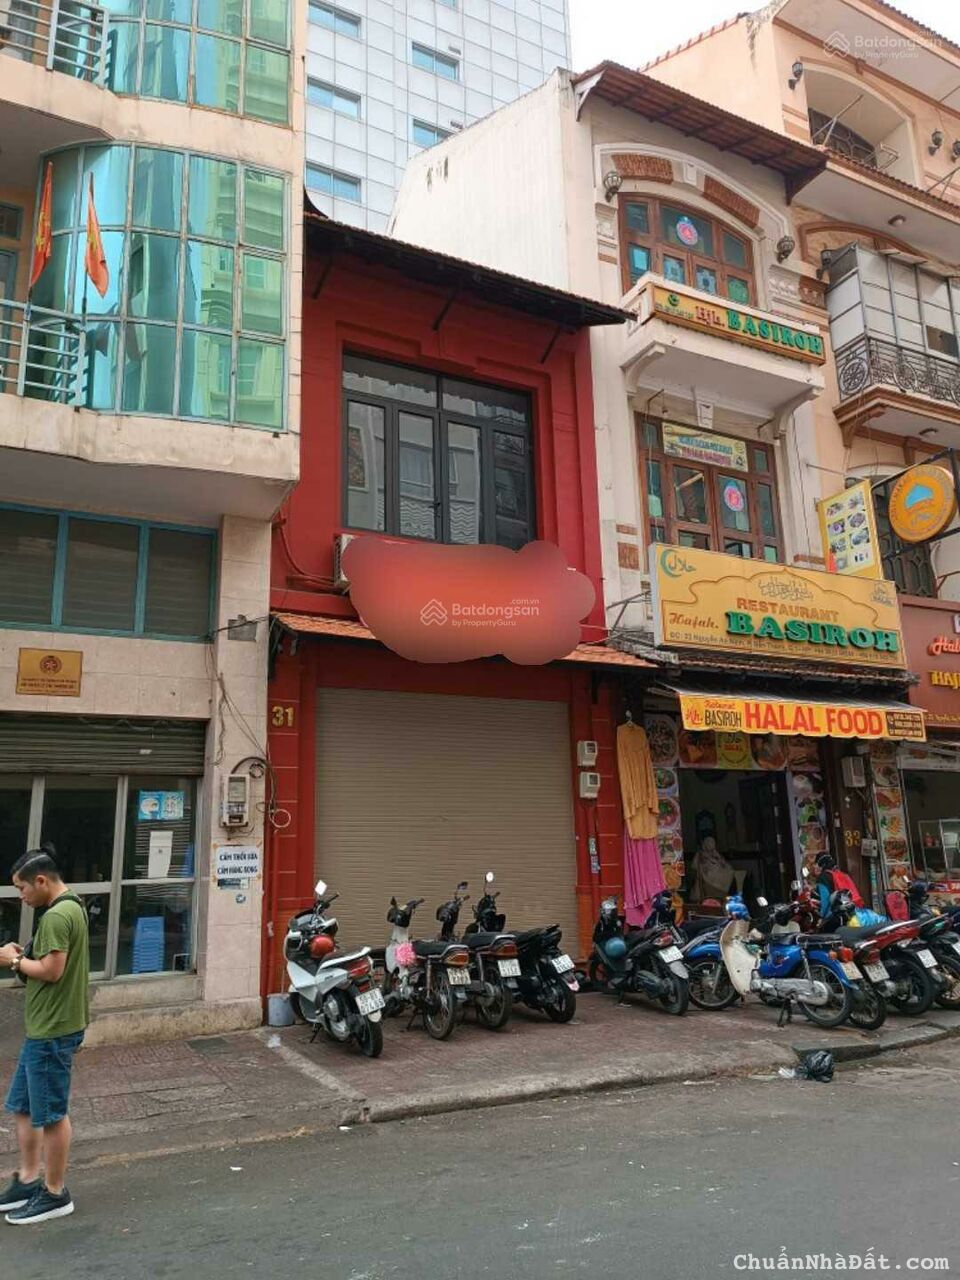 Bán nhà MT Nguyễn An Ninh, cửa Tây chợ Bến Thành, KD sầm uất. 4x17m giá 75 tỷ